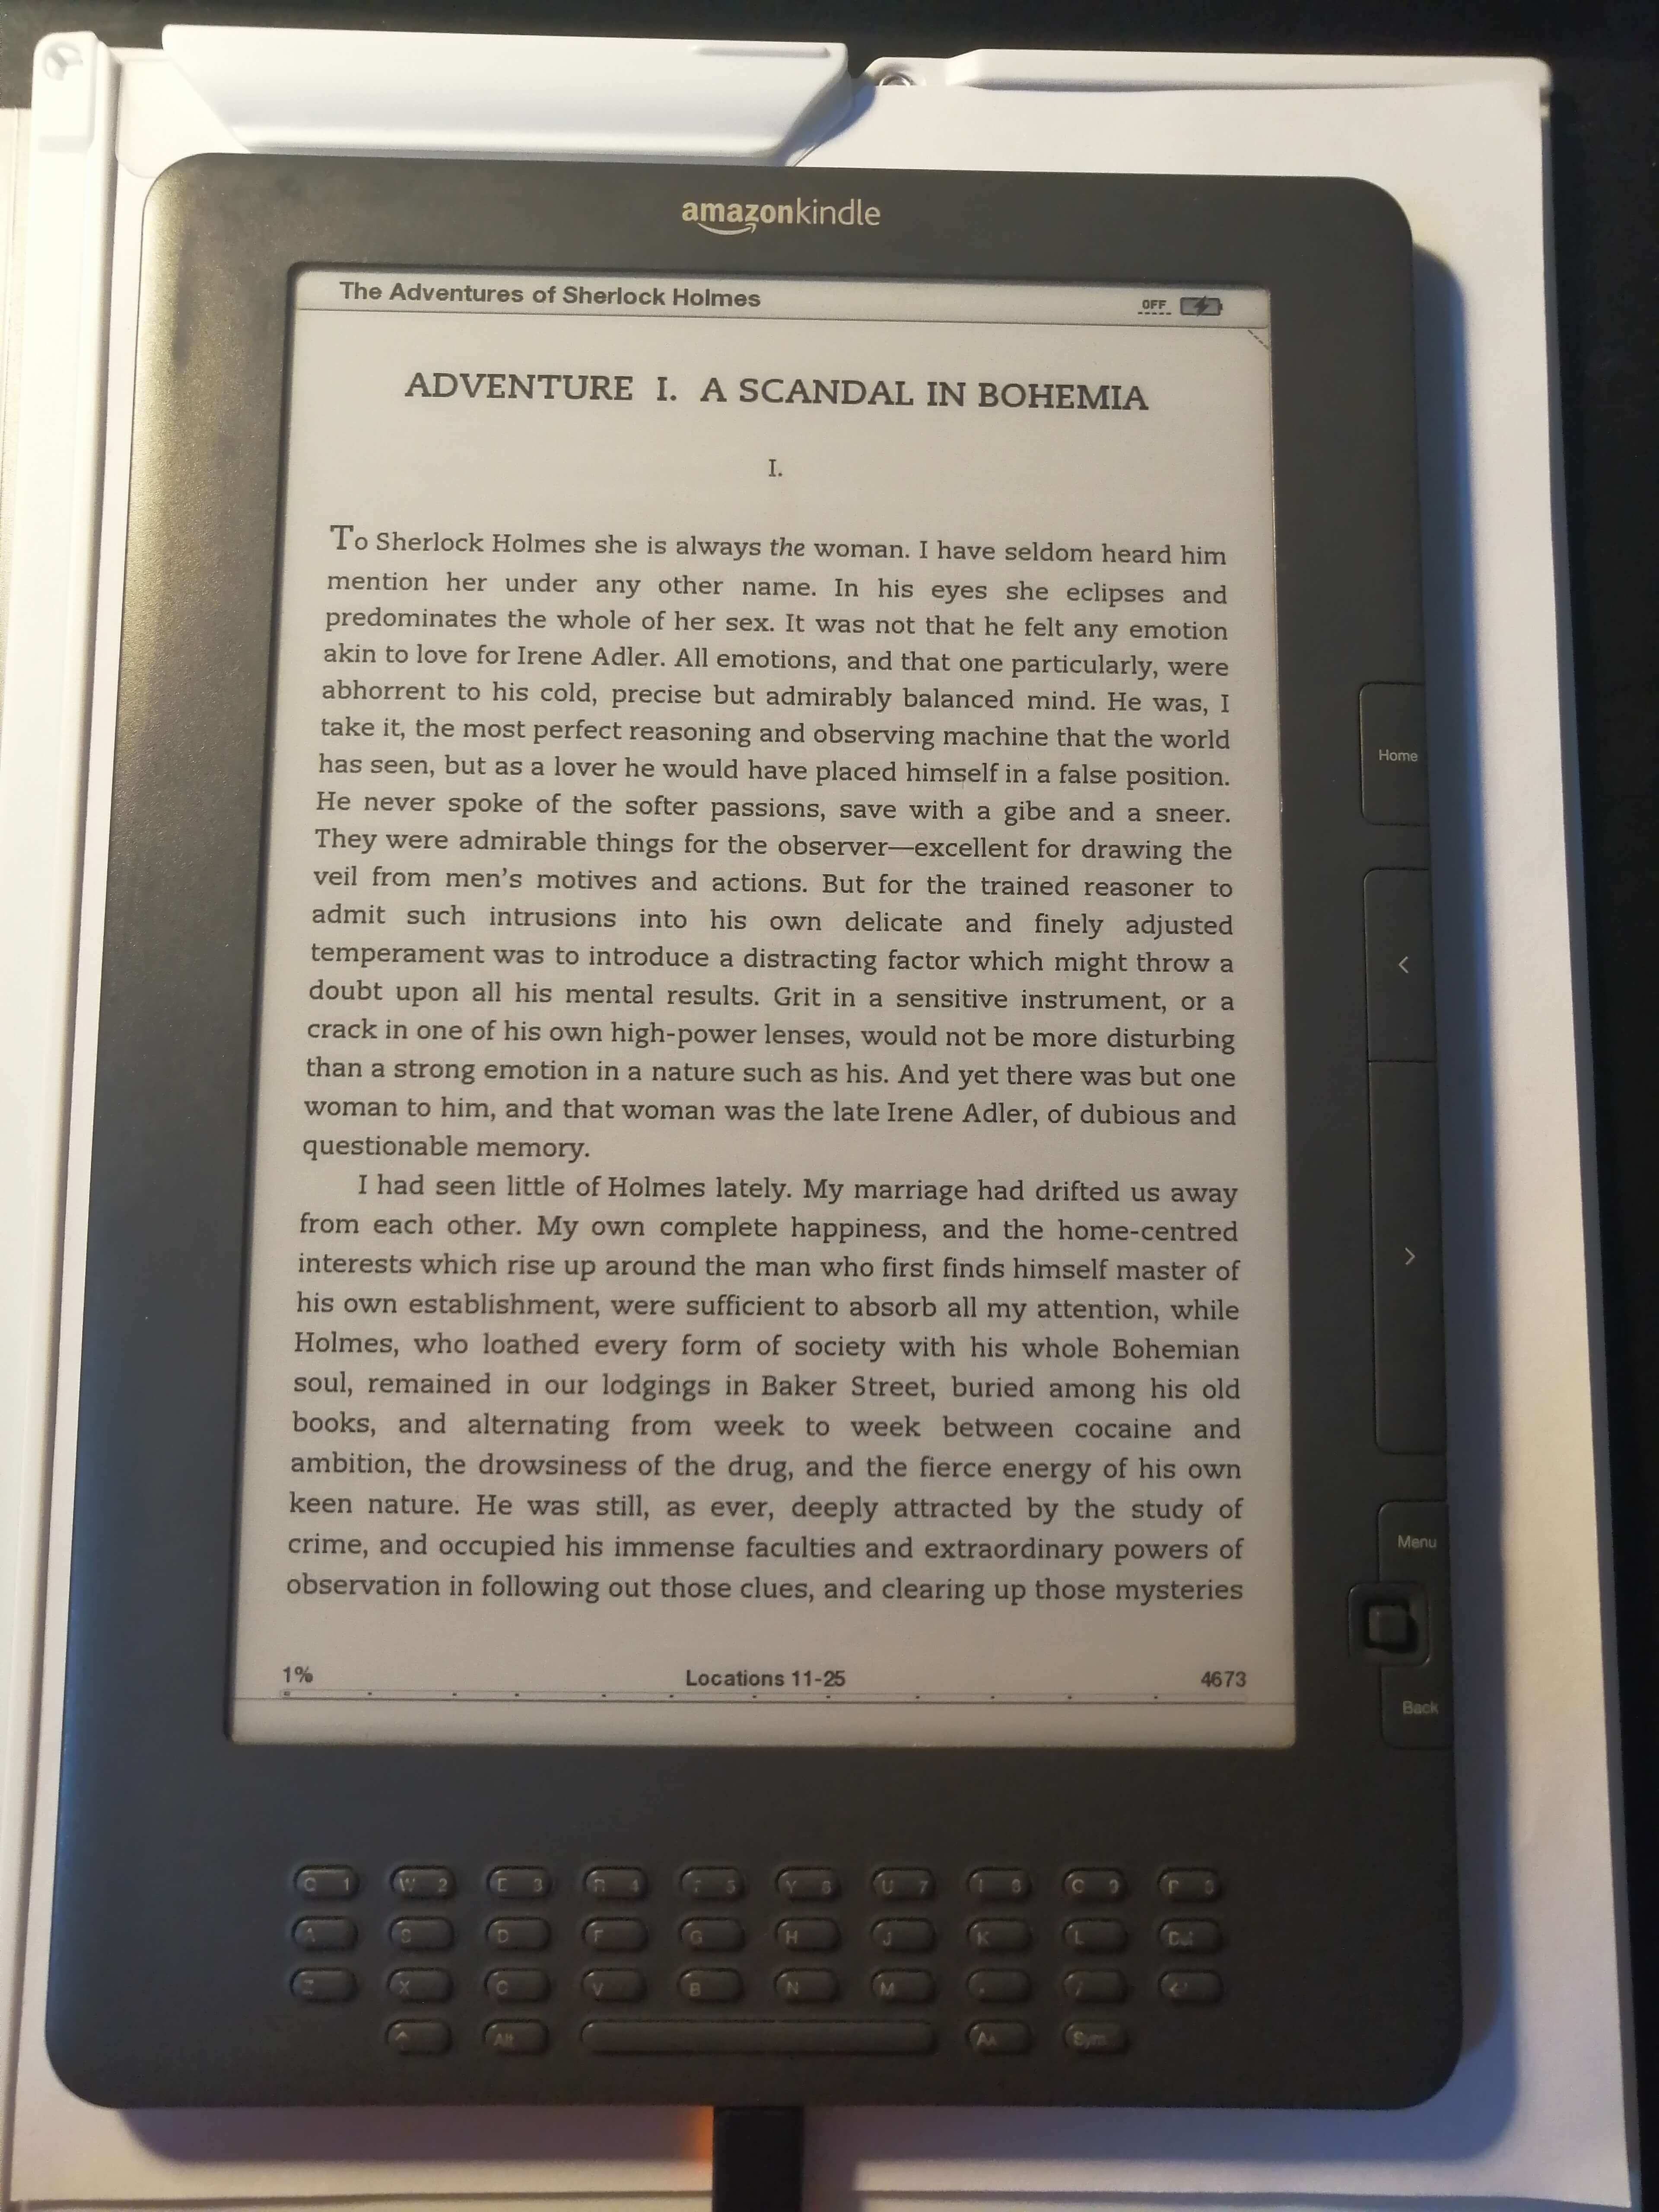 再次入手Kindle DXG-峰间的云